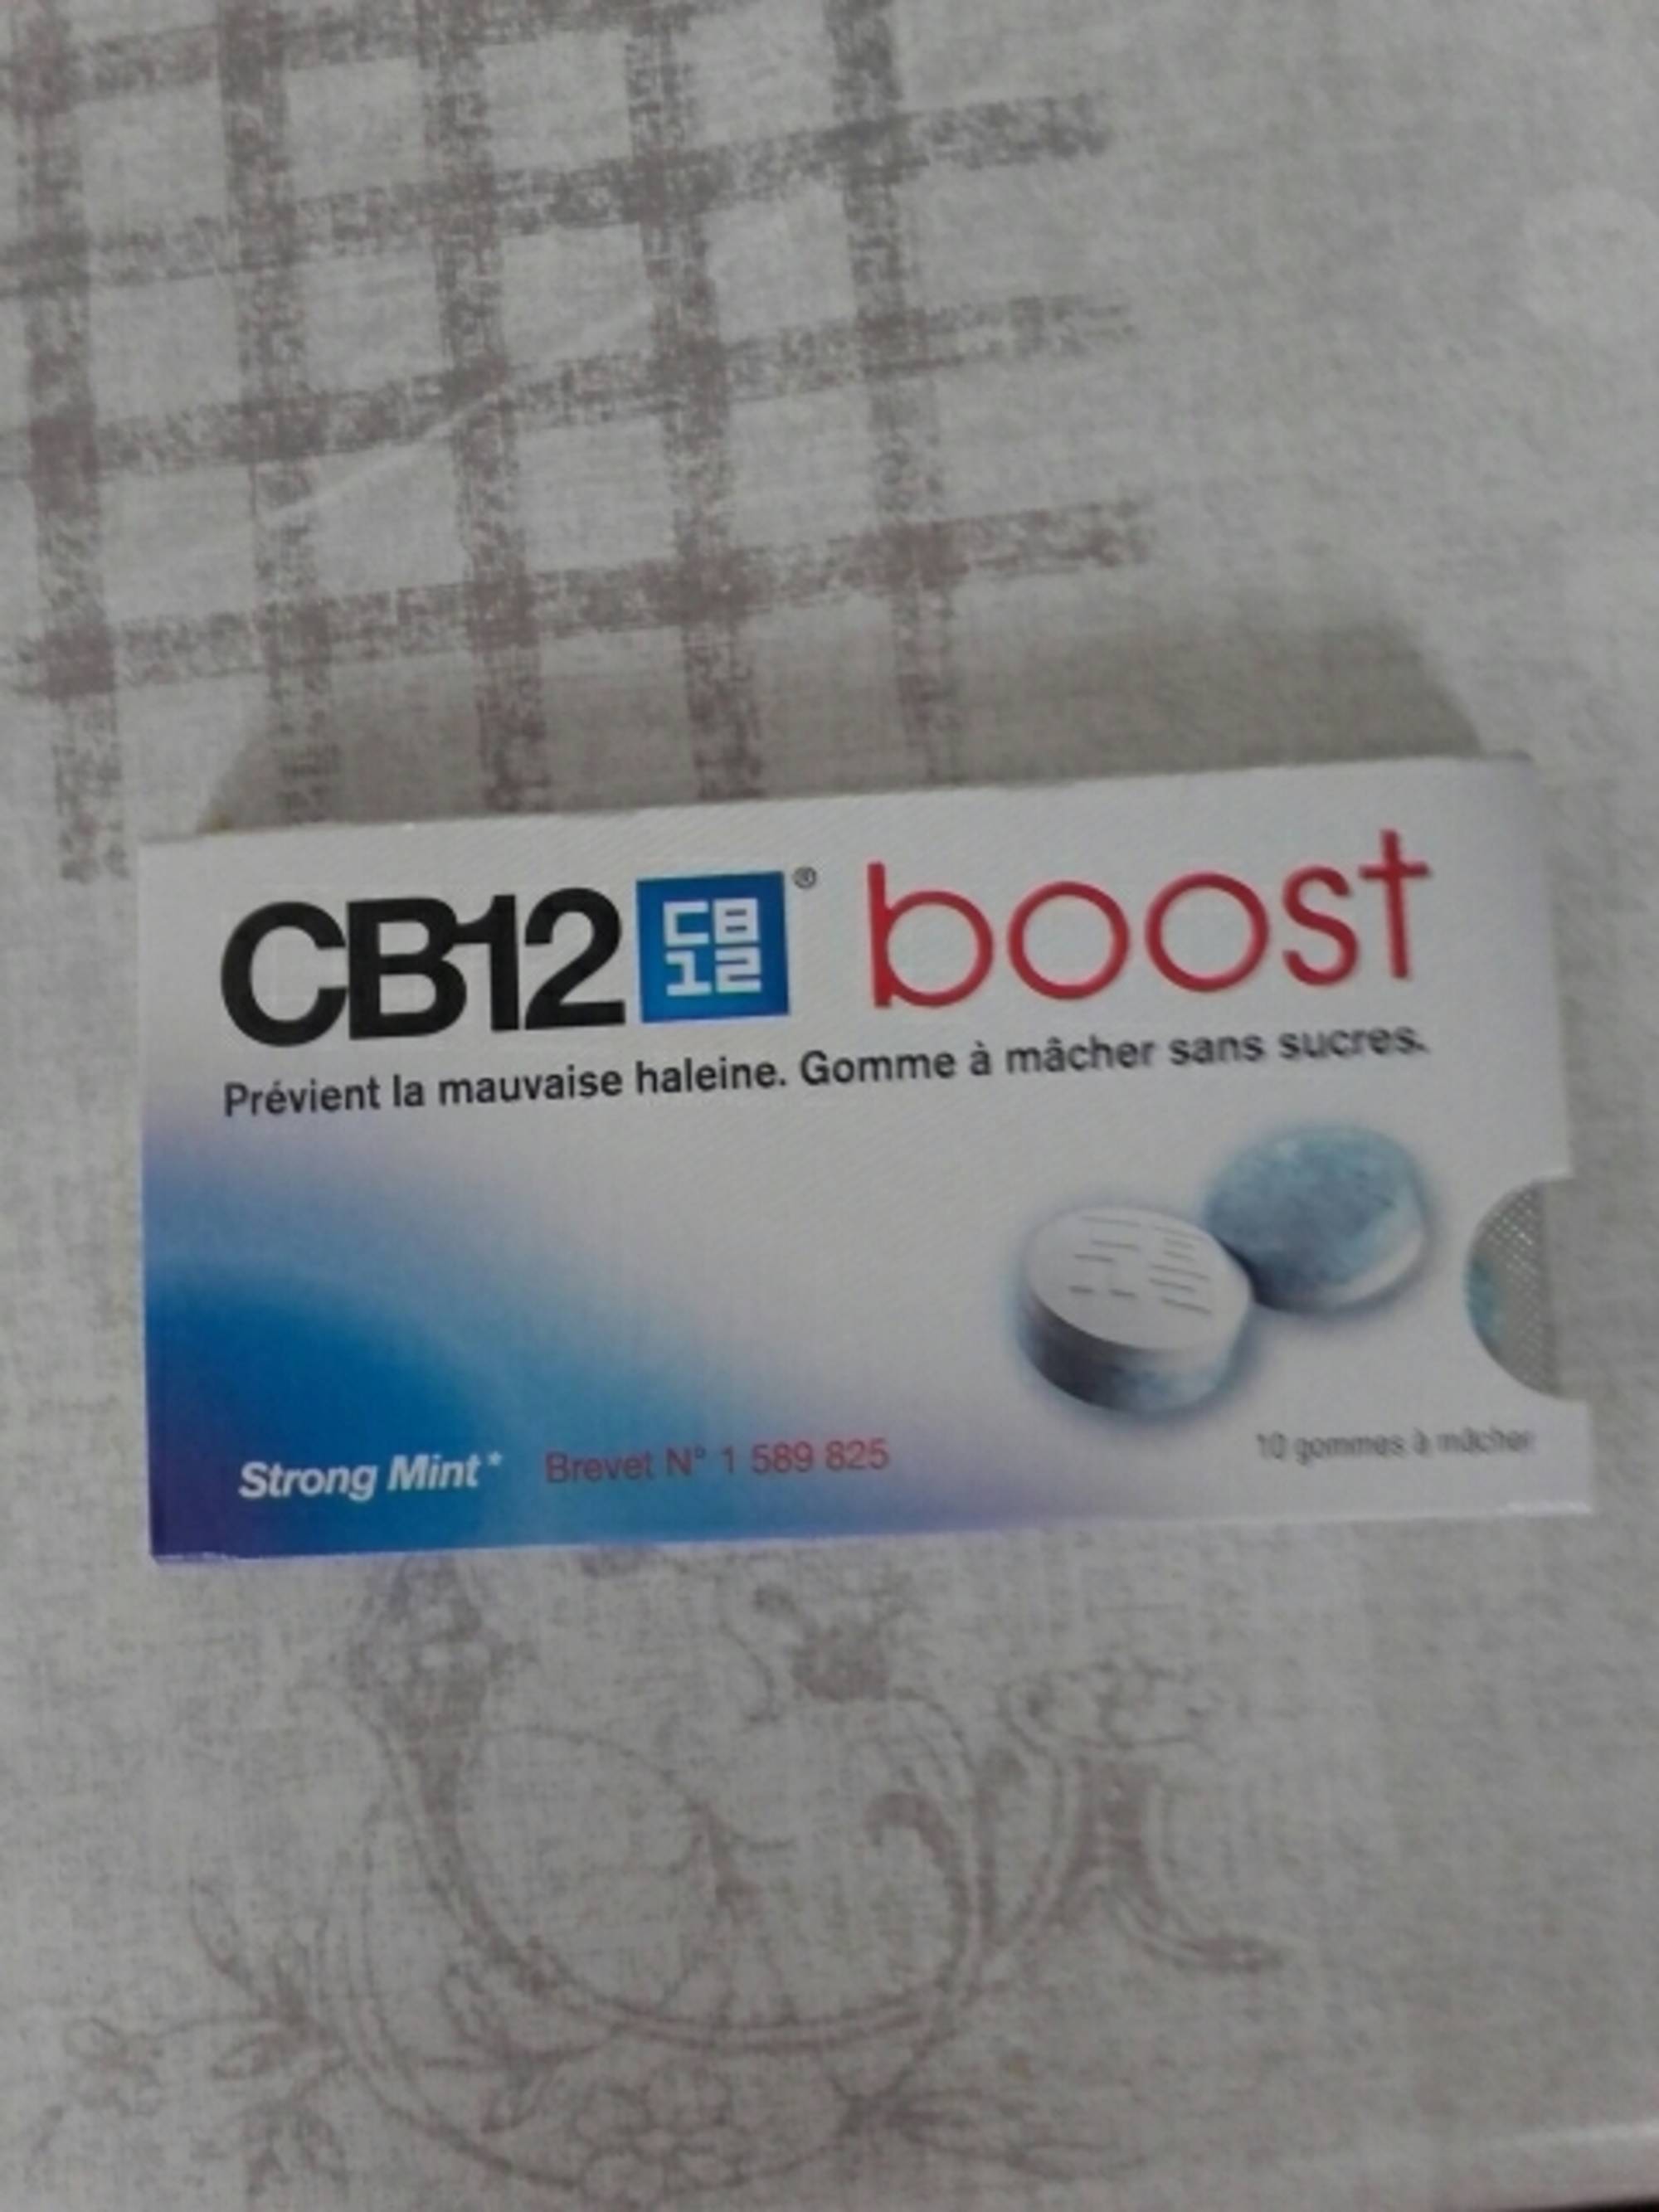 CB12 - Boost - Gomme à mâcher pour la mauvaise haleine